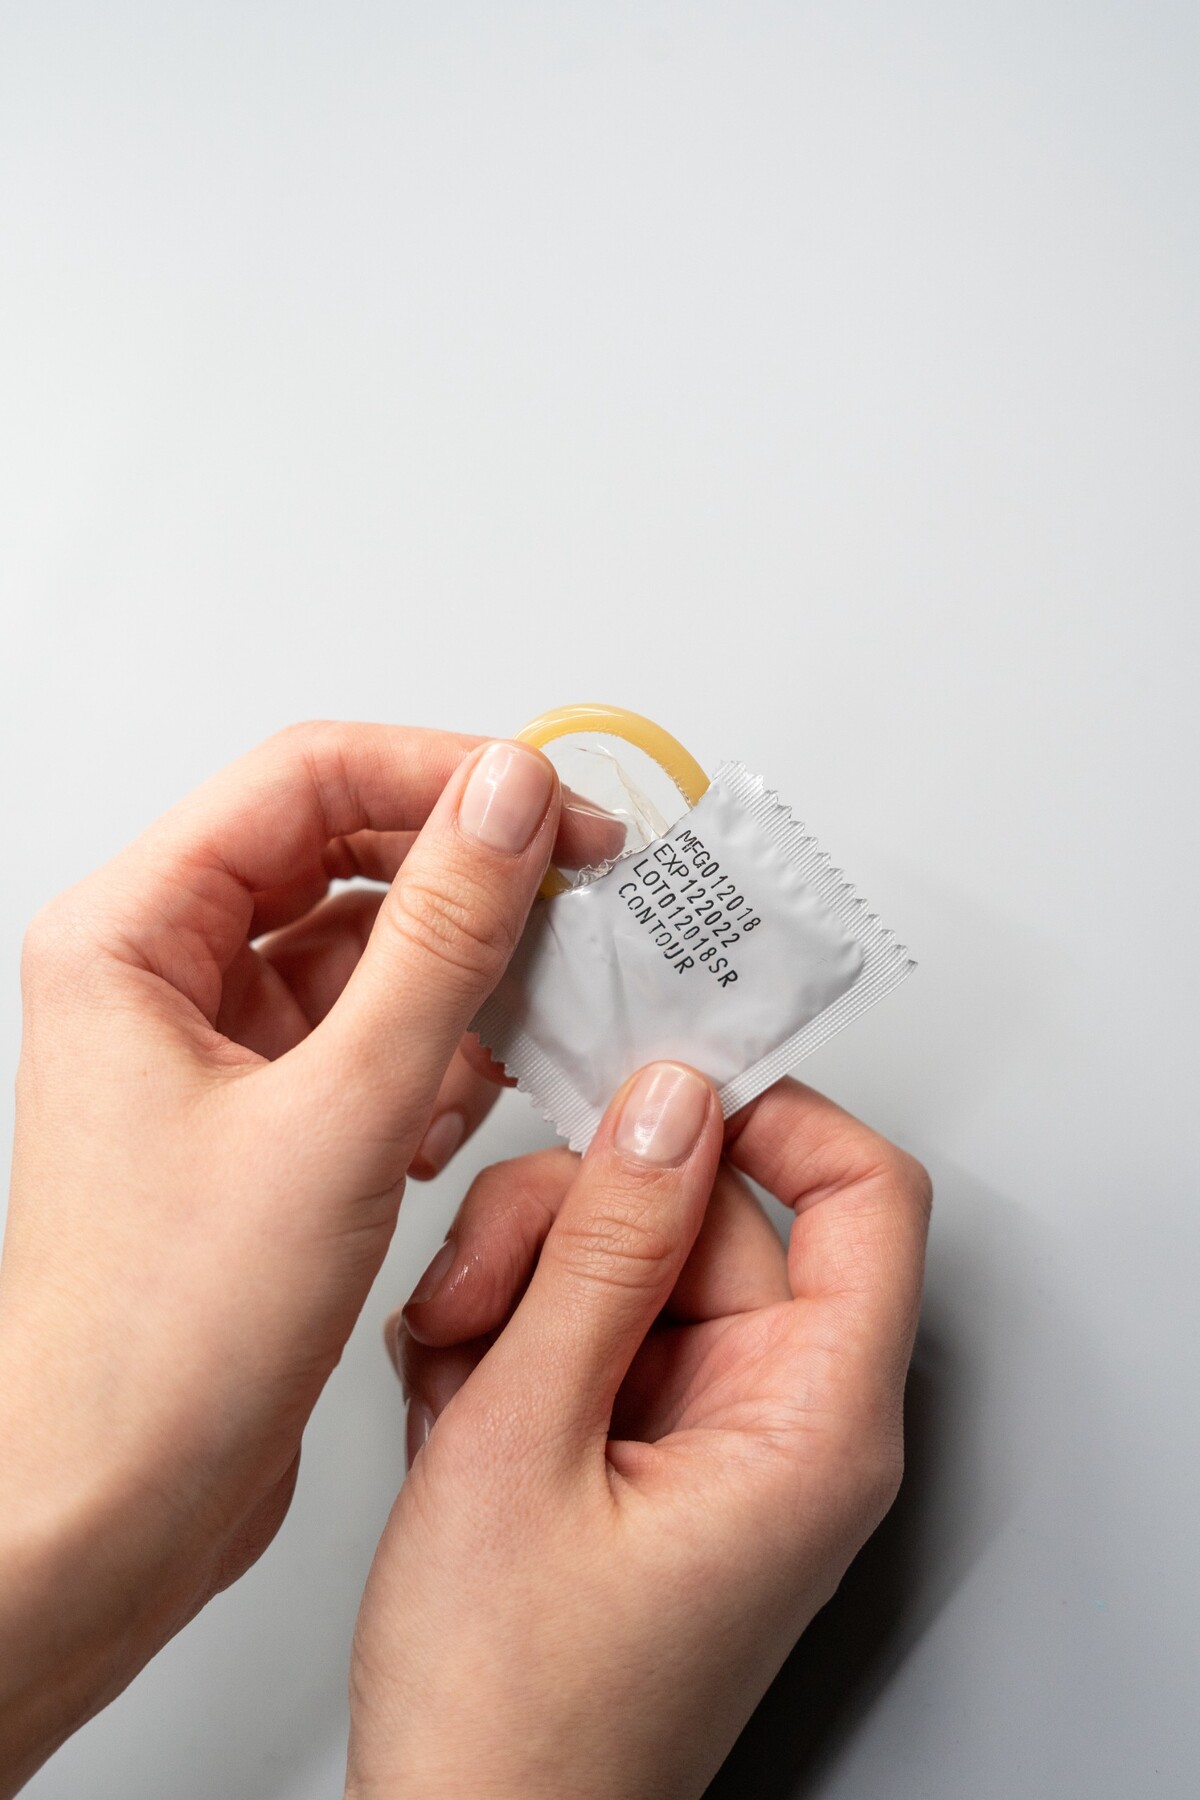 Kondóm je jediná antikoncepcia, ktorá zároveň chráni aj pred pohlavne prenosnými infekciami.